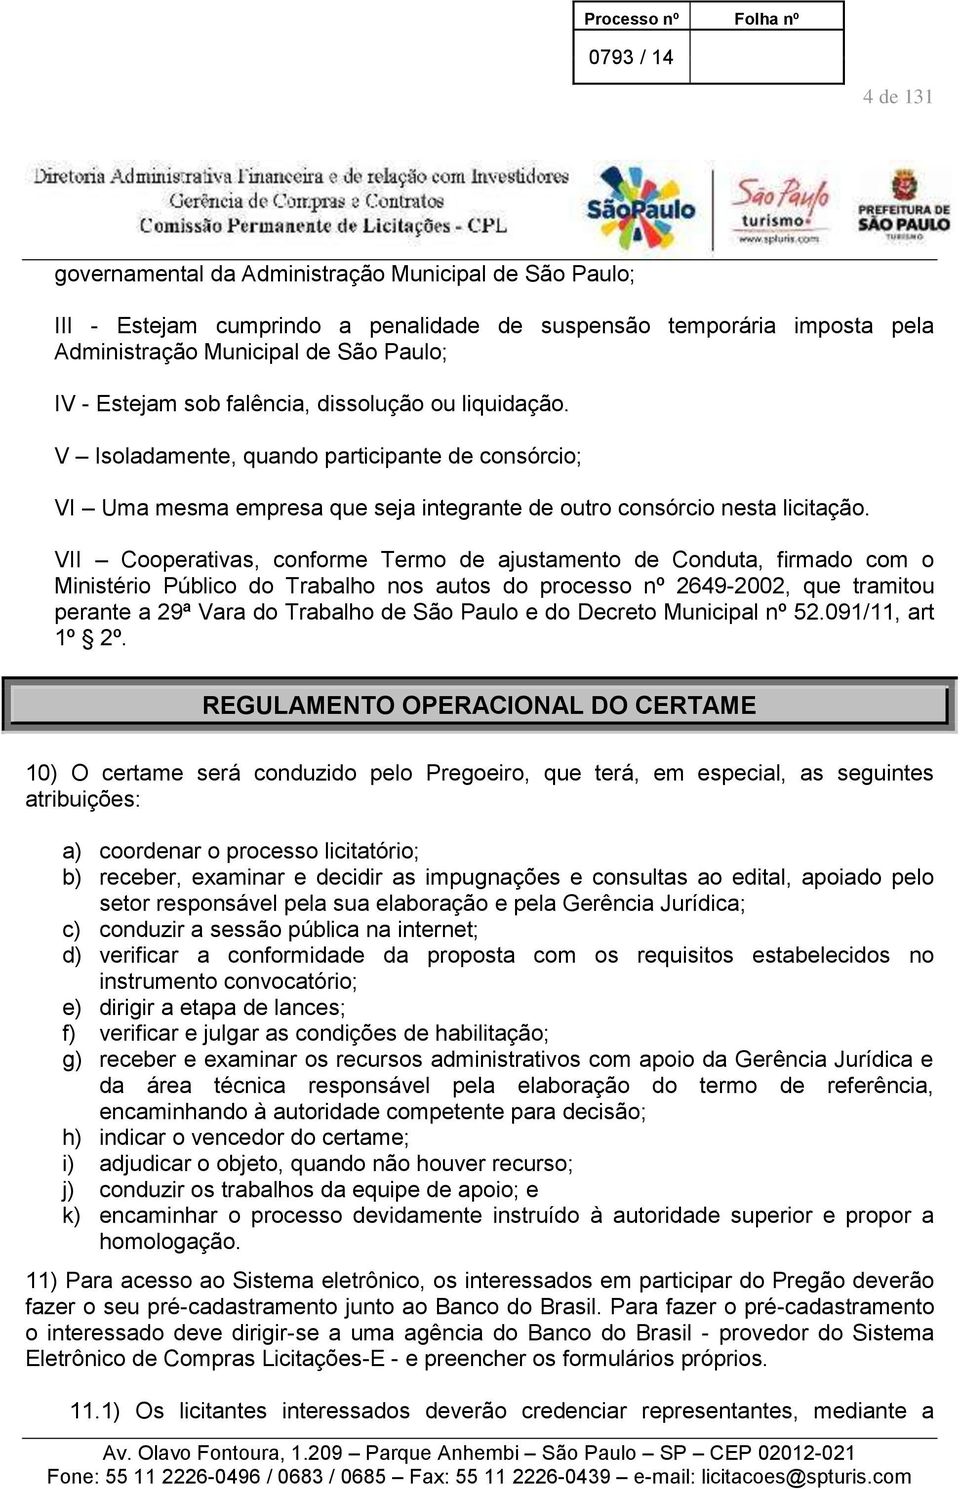 VII Cooperativas, conforme Termo de ajustamento de Conduta, firmado com o Ministério Público do Trabalho nos autos do processo nº 2649-2002, que tramitou perante a 29ª Vara do Trabalho de São Paulo e